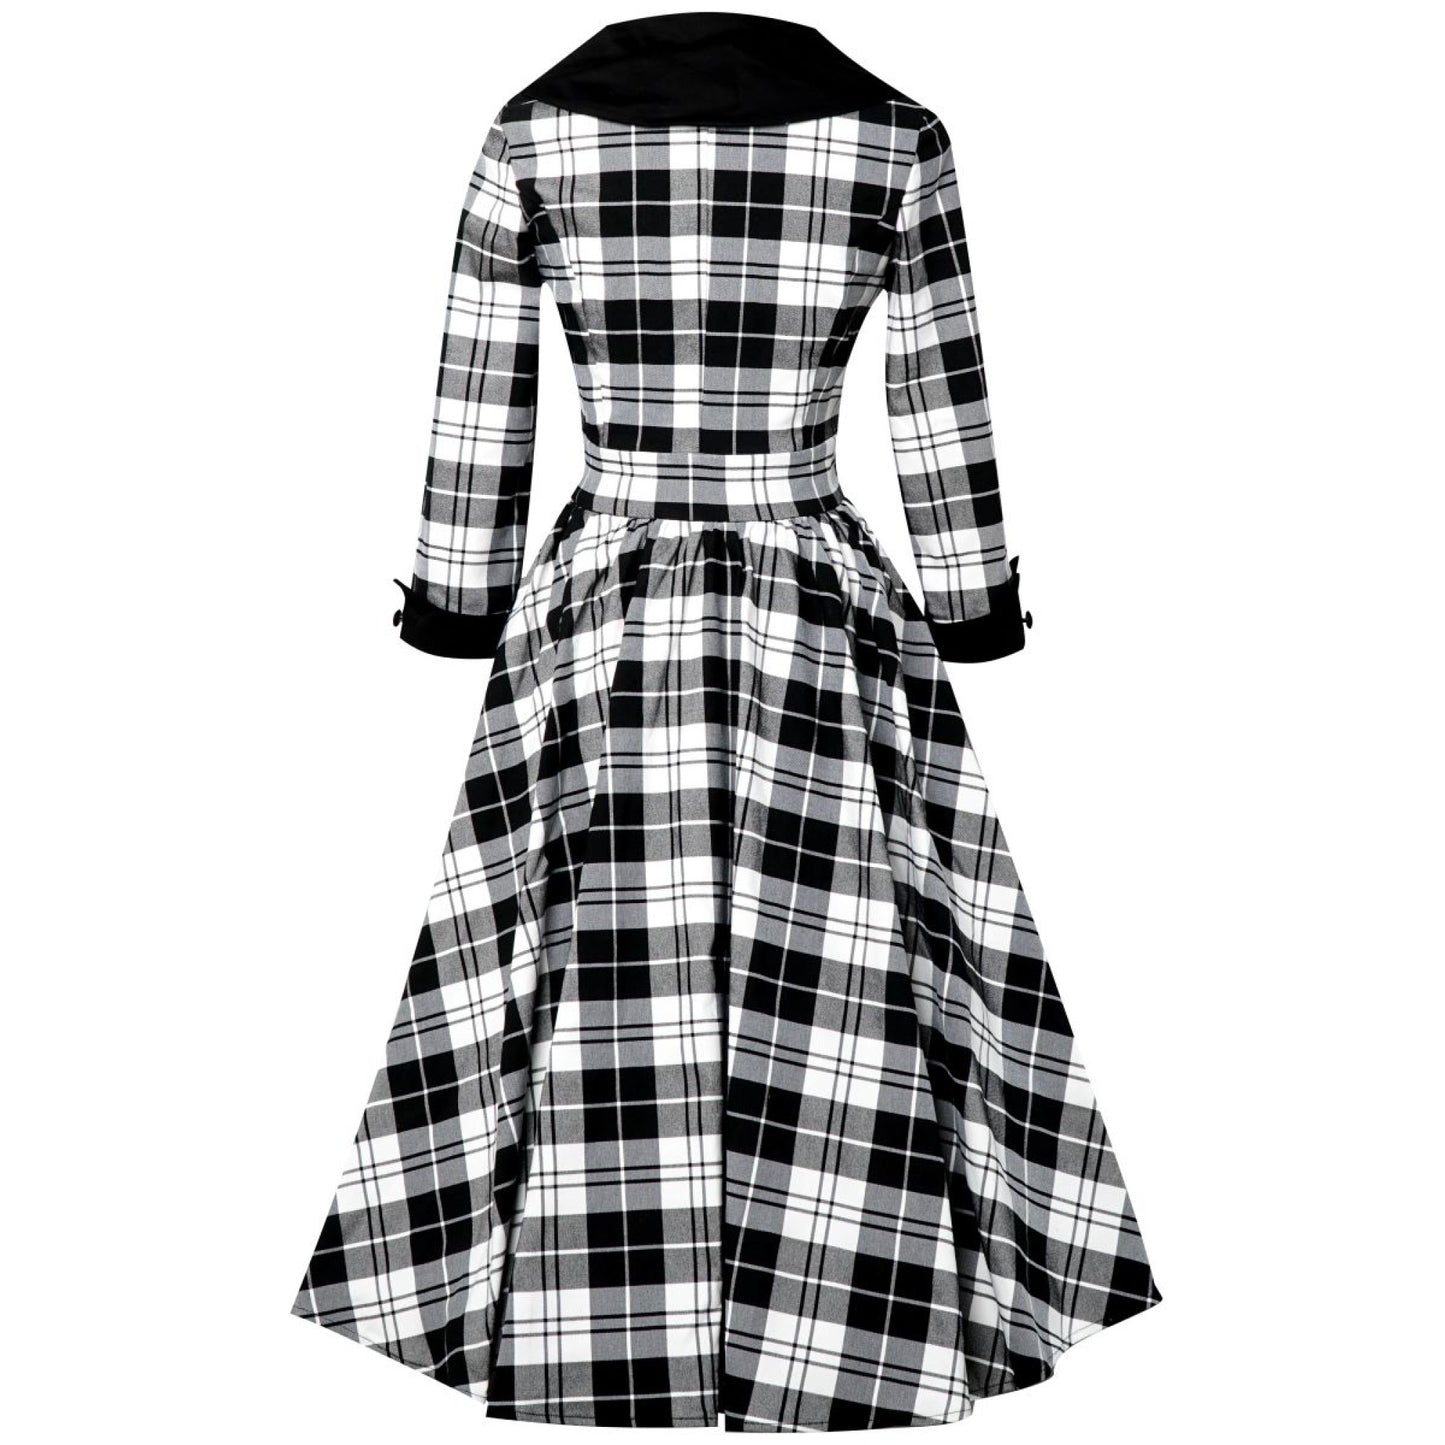 Tiffany Kleid Tartan schwarz